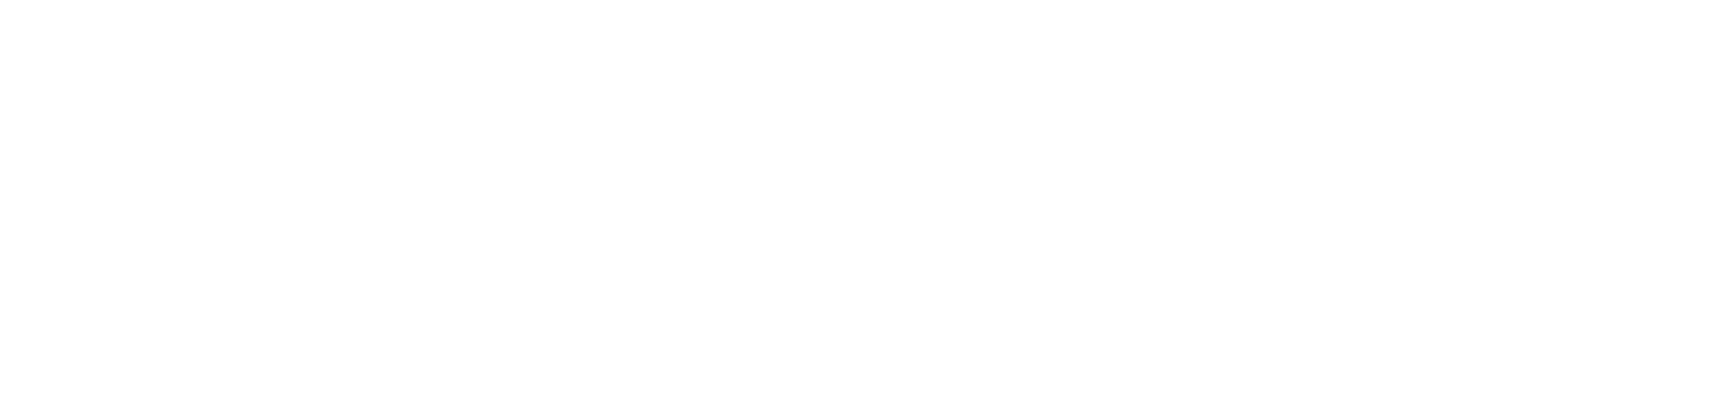 Key.ma